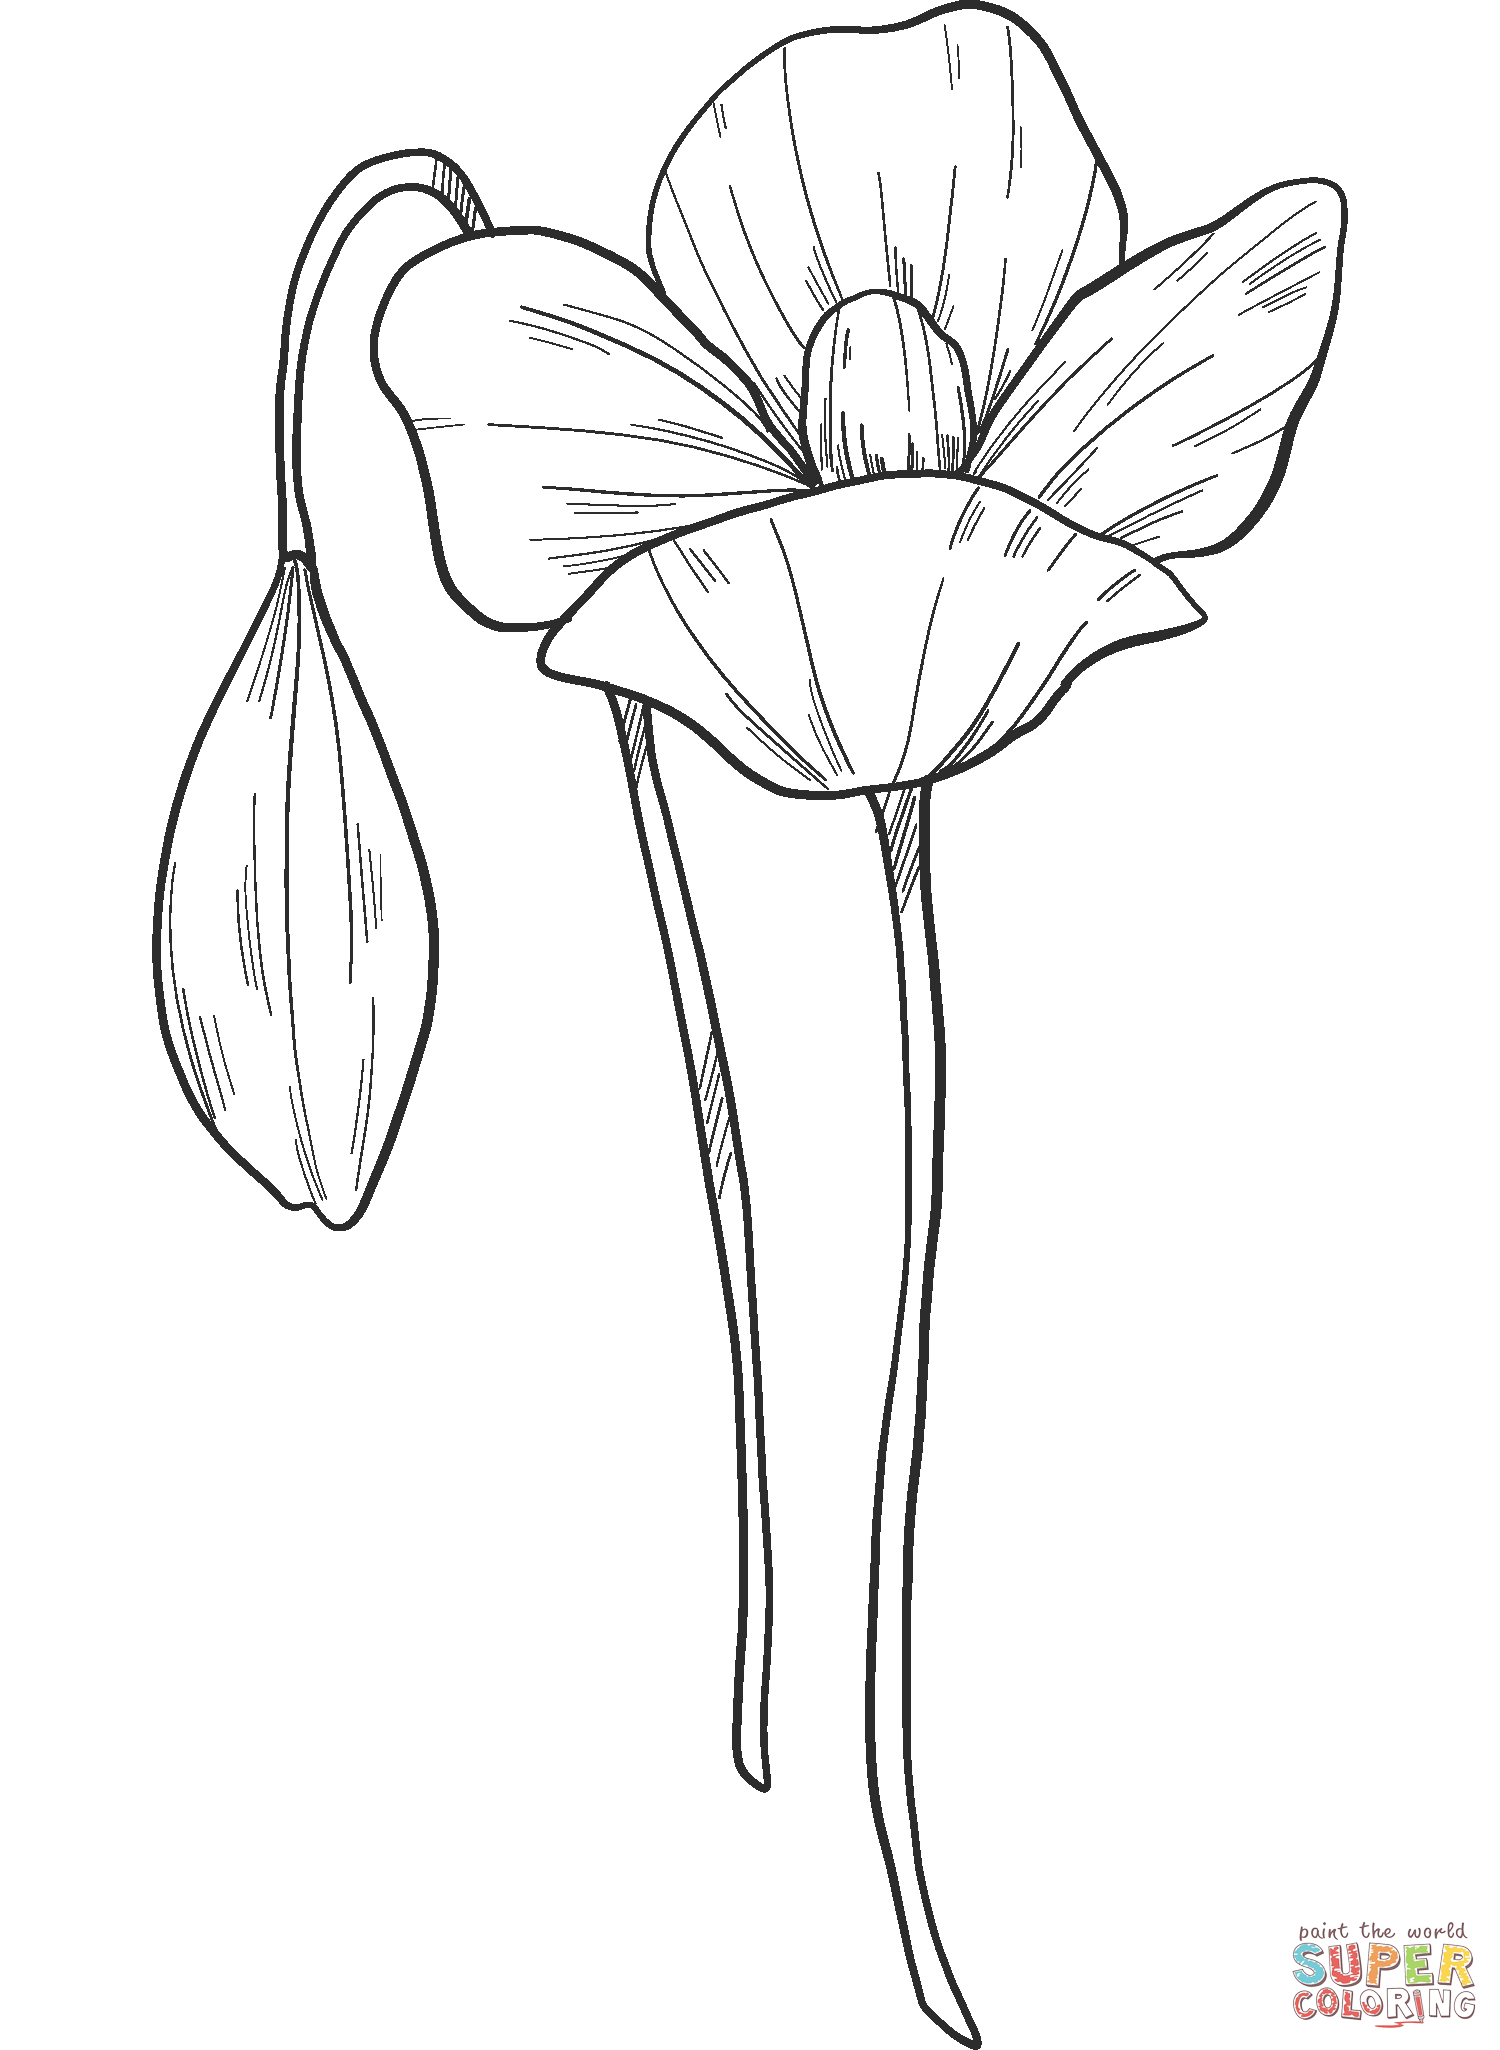 زهور الخشخاش من الخشخاش